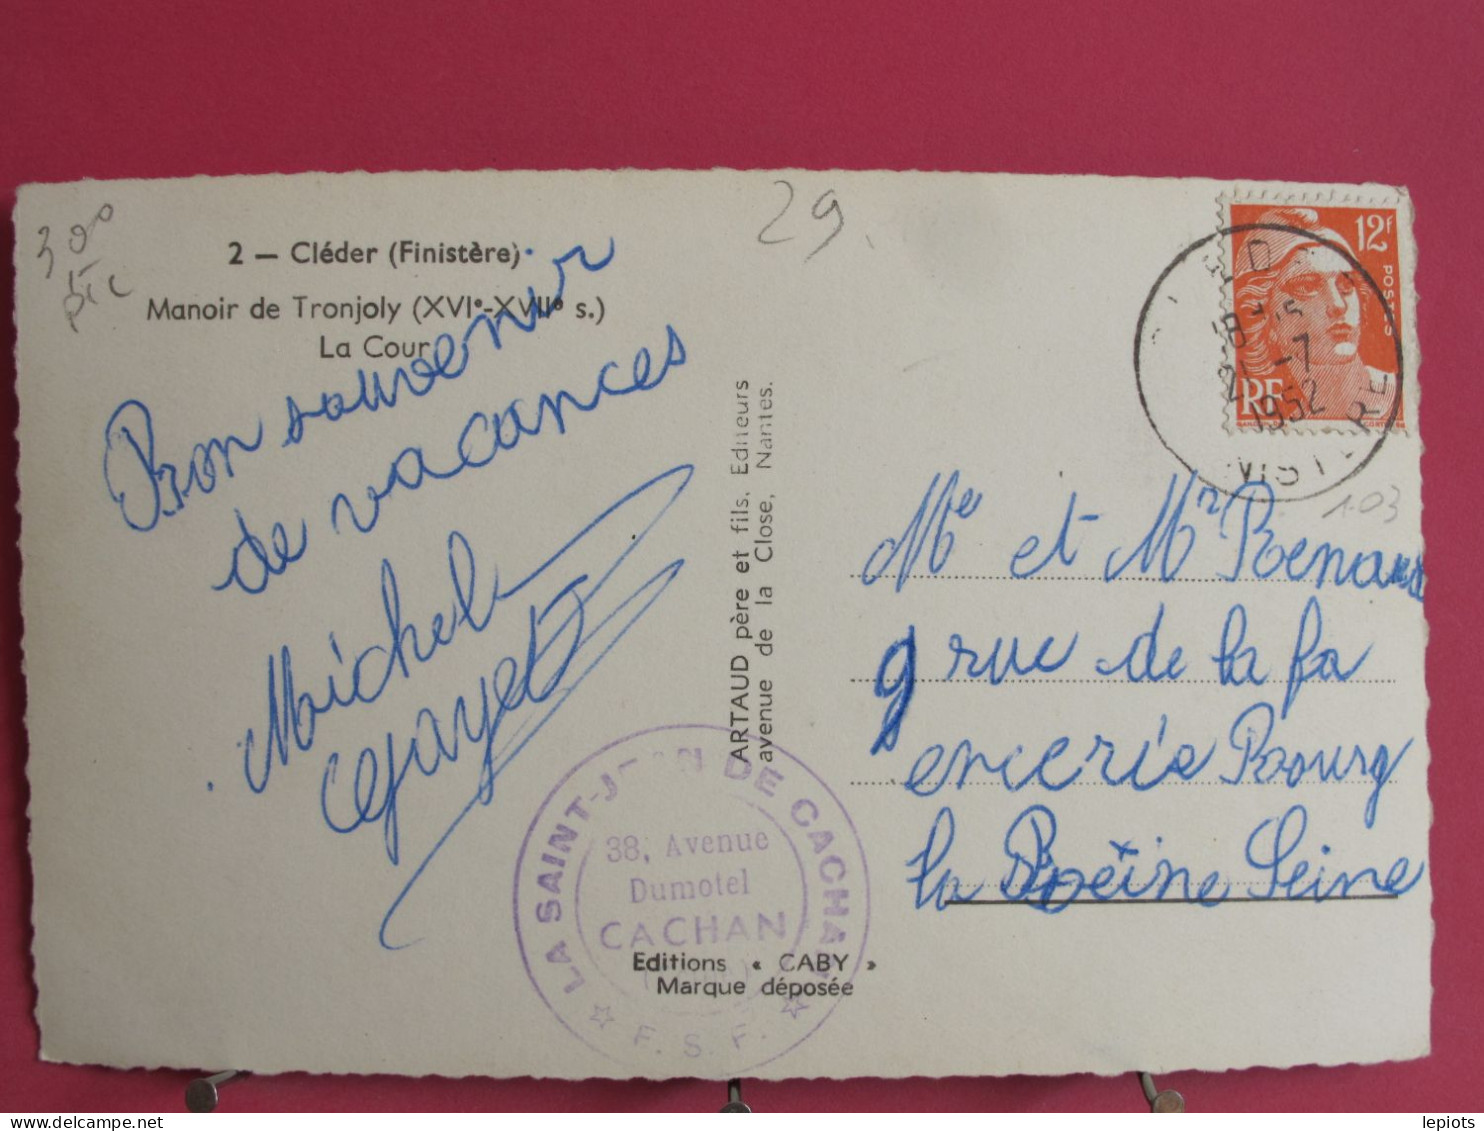 Visuel Pas Très Courant - 29 - Cléder - Manoir De Tronjoly - La Cour - 1952 - Très Bon état - Cléder